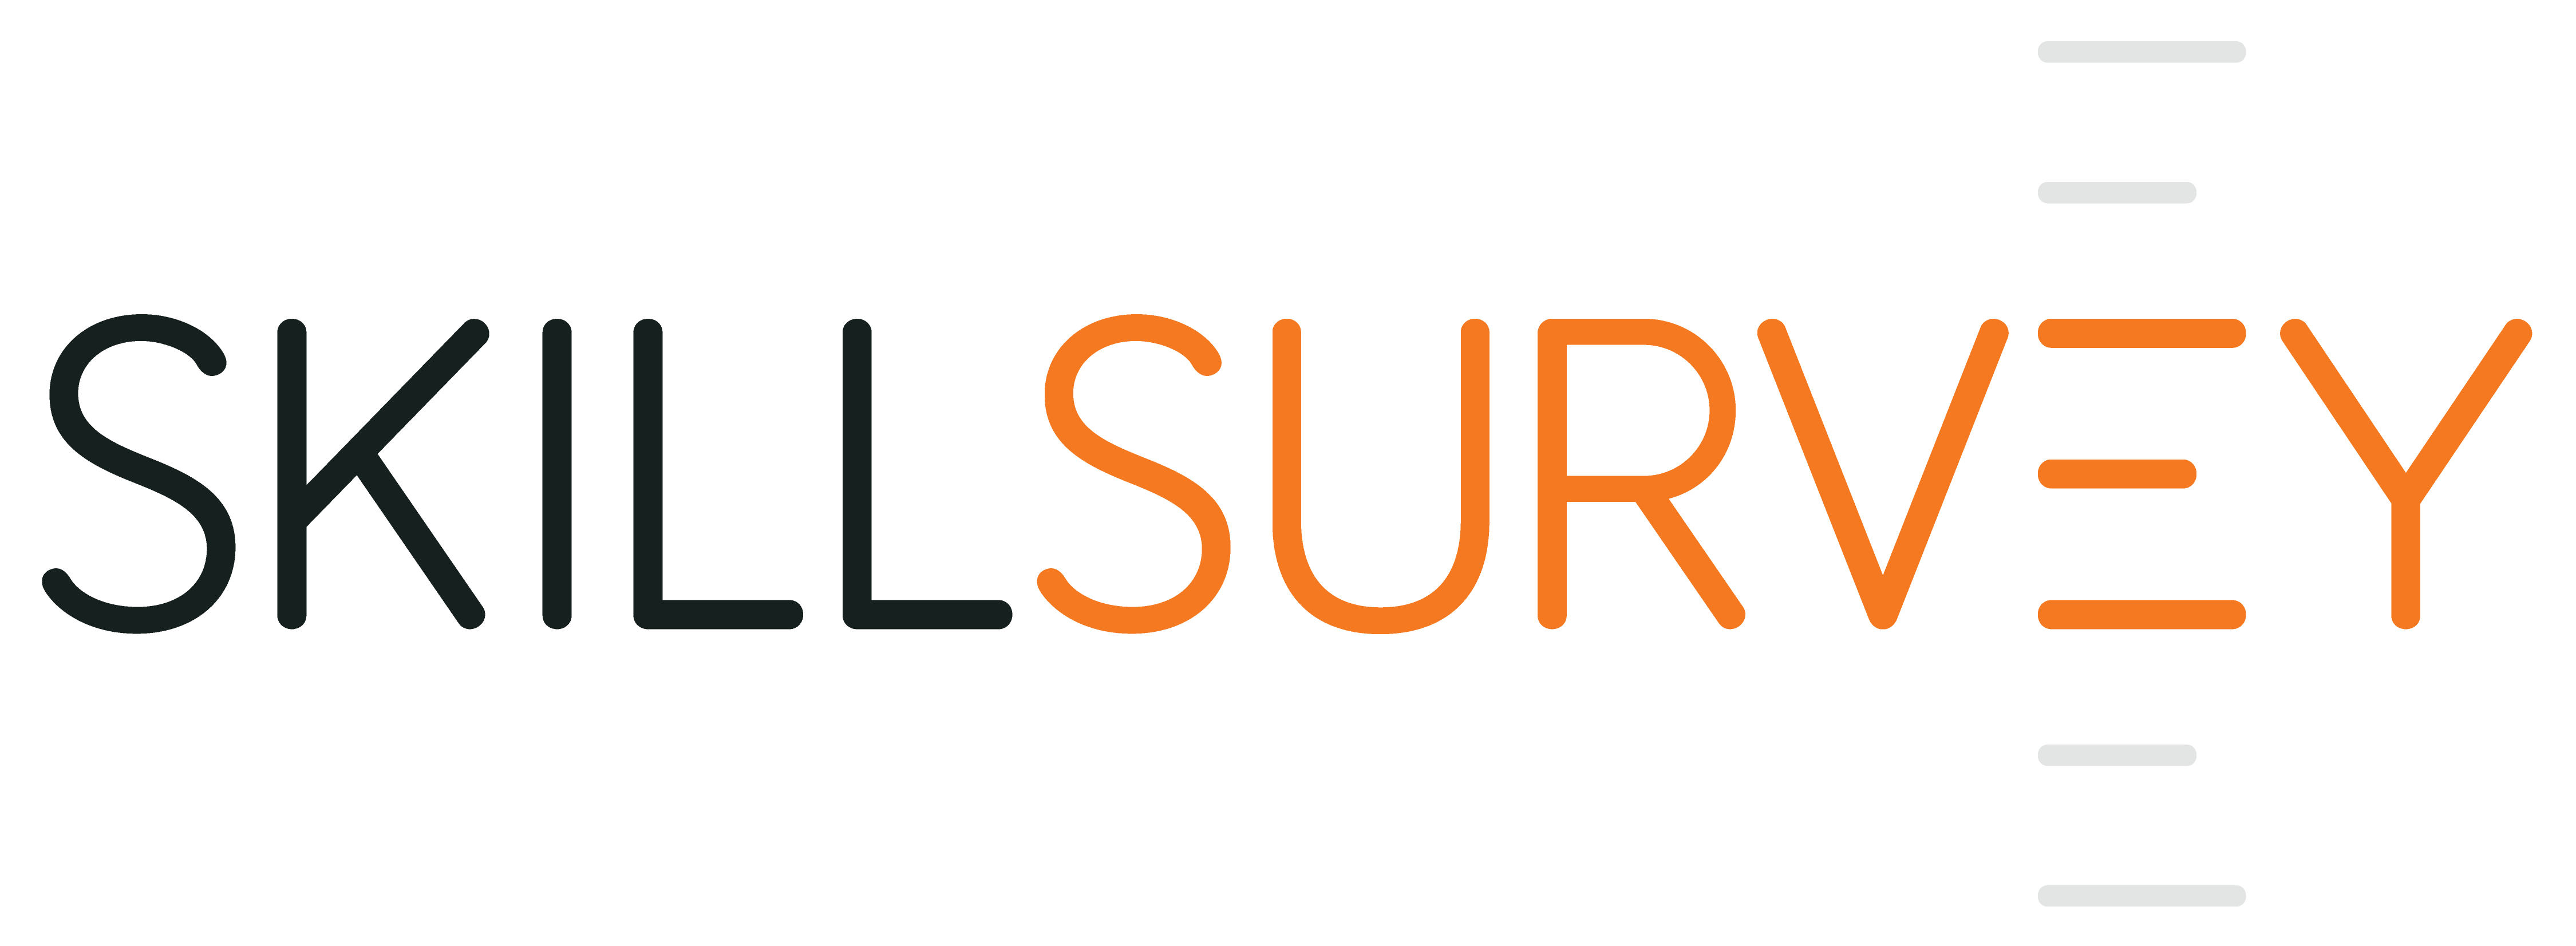 website_skillsurvey_logo